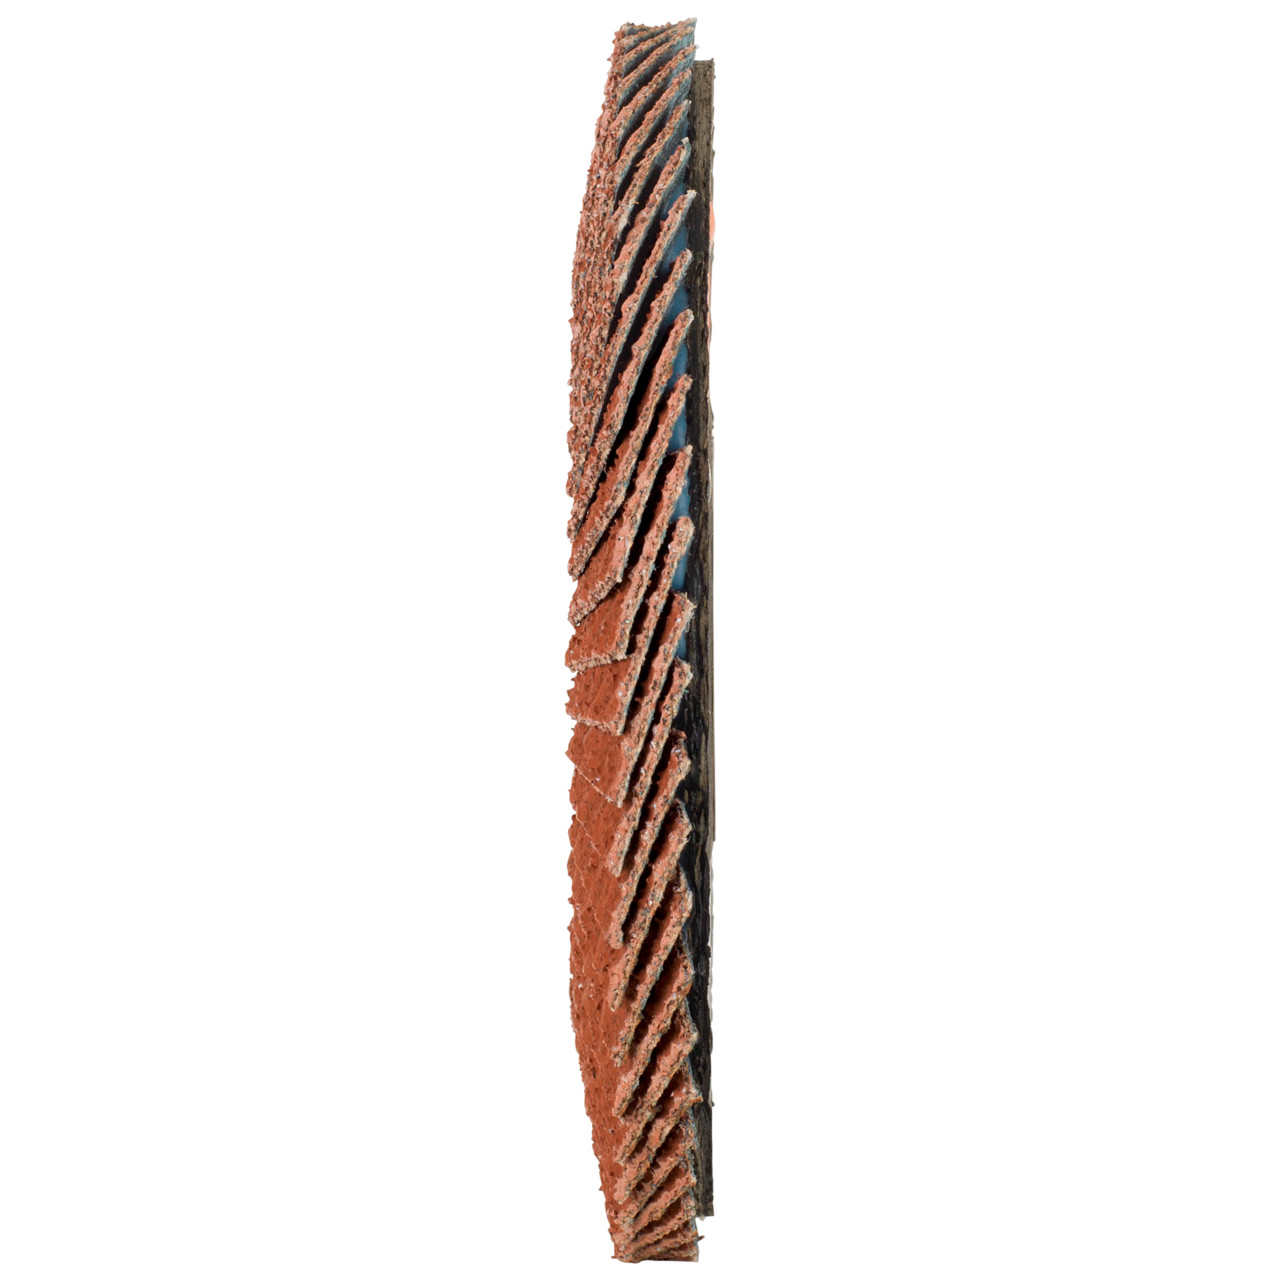 Tyrolit Rondelle éventail DxH 125x22,23 Pour les métaux non ferreux, P60, Forme : 28A - modèle droit (modèle à corps en fibre de verre), Art. 707160